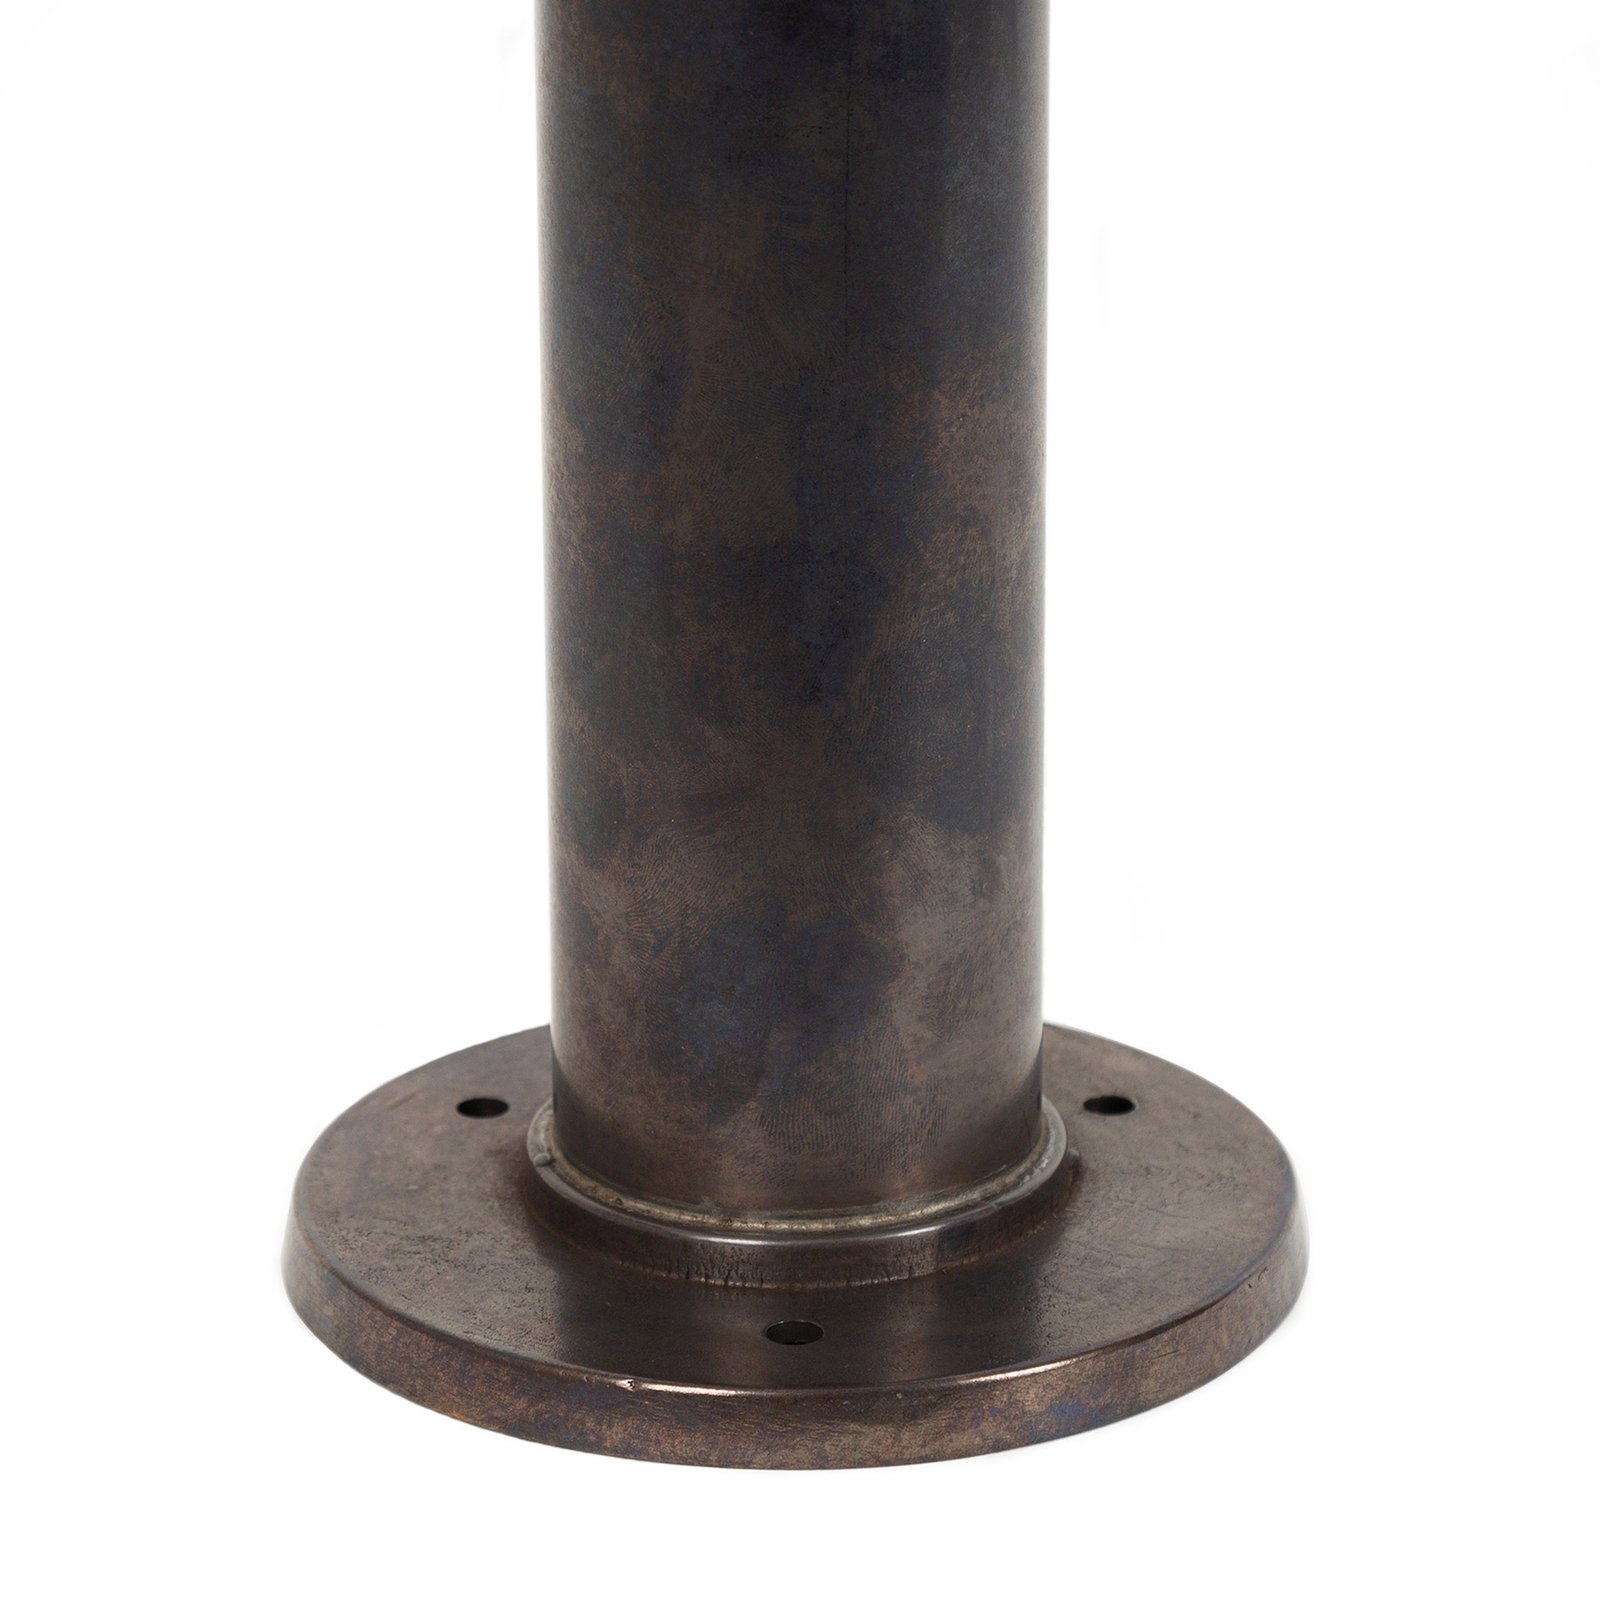 Wegelampe Resident 2 aus Messing, bronze